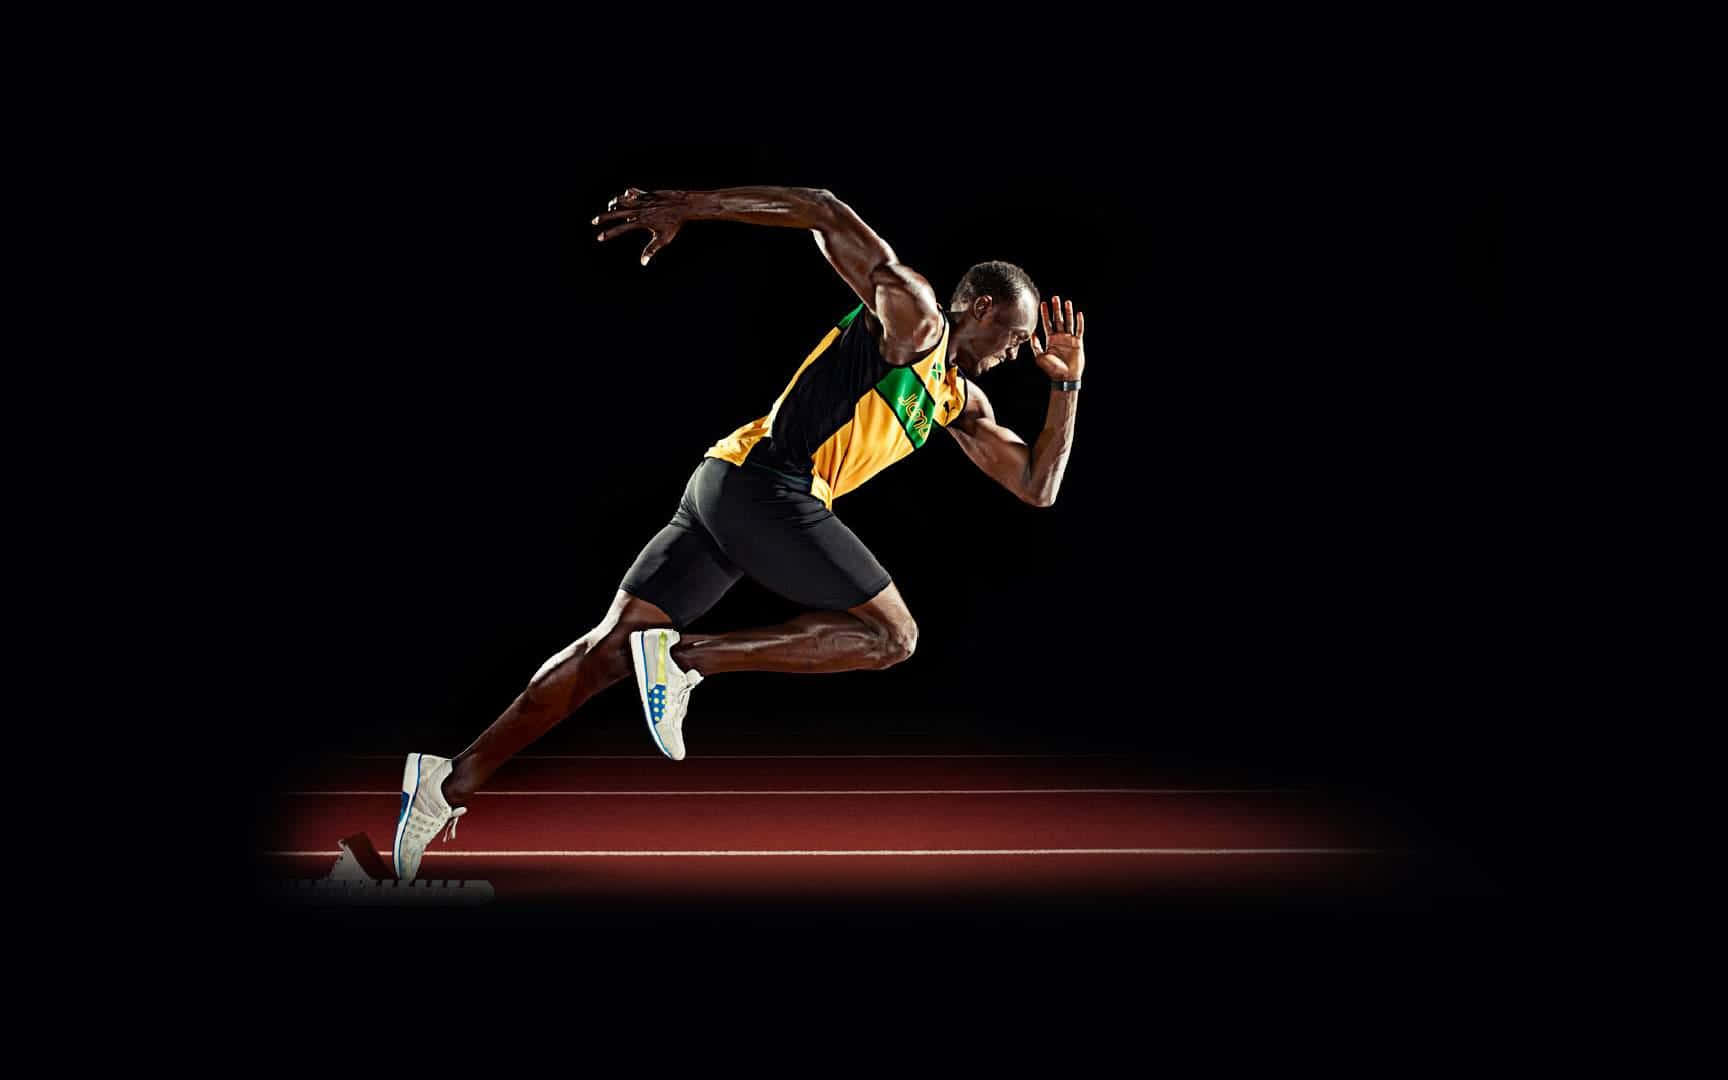 Jamaicansk atlet Usain Bolt illustration på baggrund Wallpaper